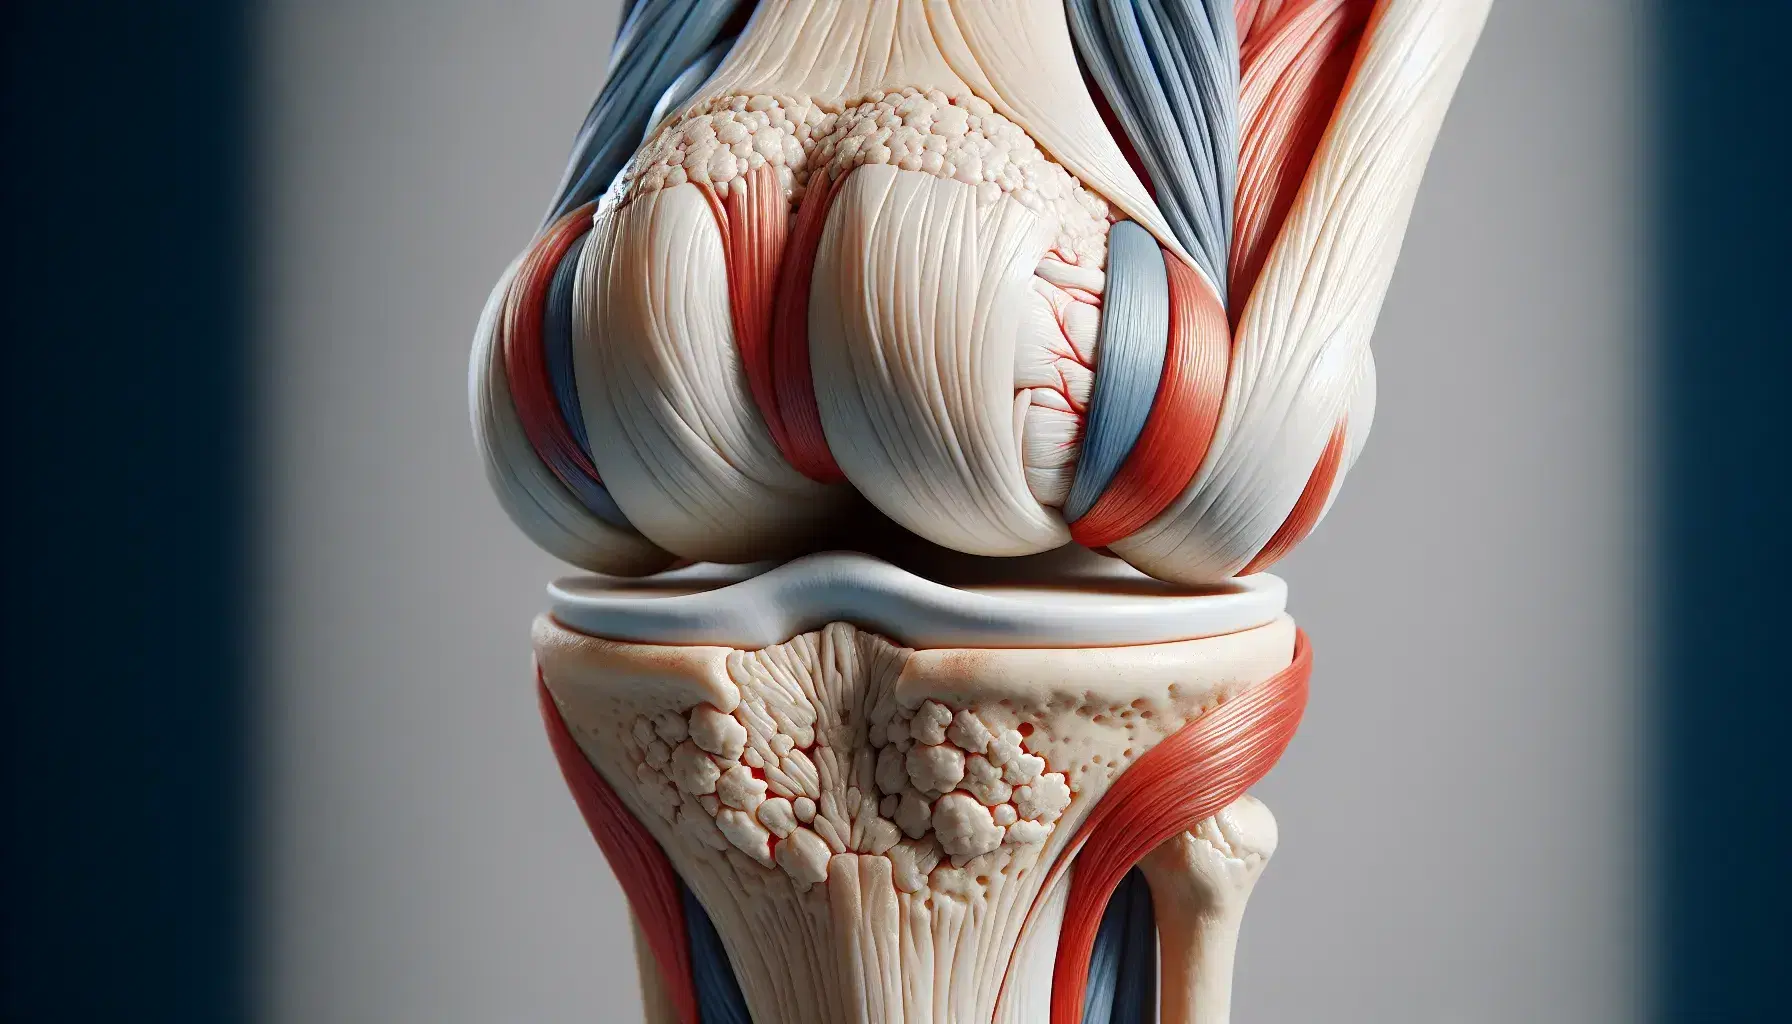 Modello anatomico dettagliato del ginocchio umano con femore, rotula e tibia, e strutture muscolari e legamentose in evidenza.